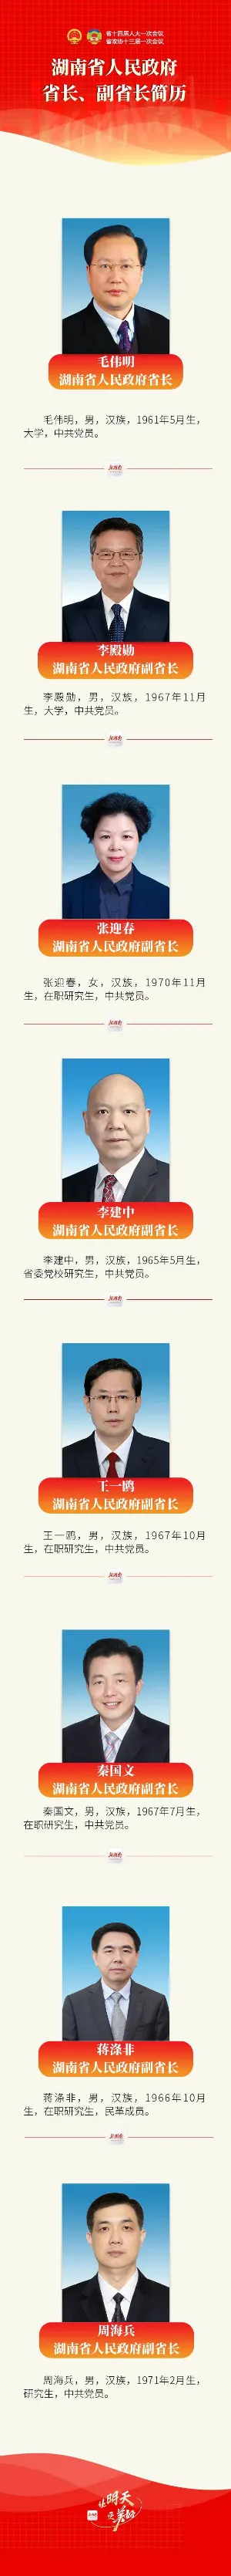 最新湖南省长、副省长简历 现任湖南政府领导班子名单